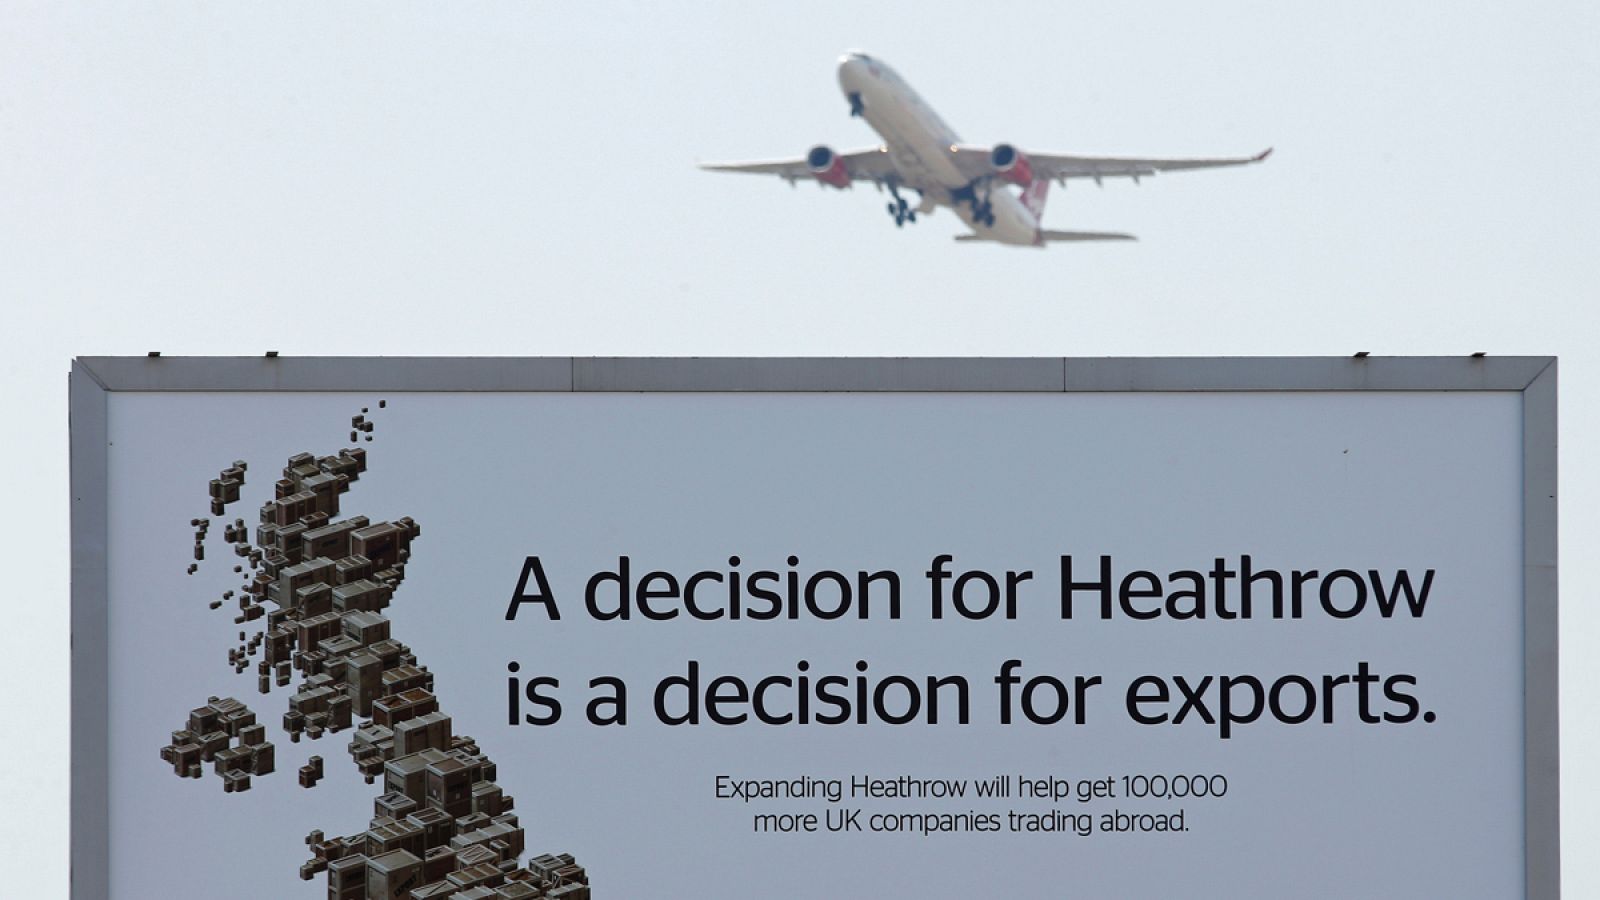 Un avión sobrevuela un anuncio sobre las ventajas de ampliar Heathrow